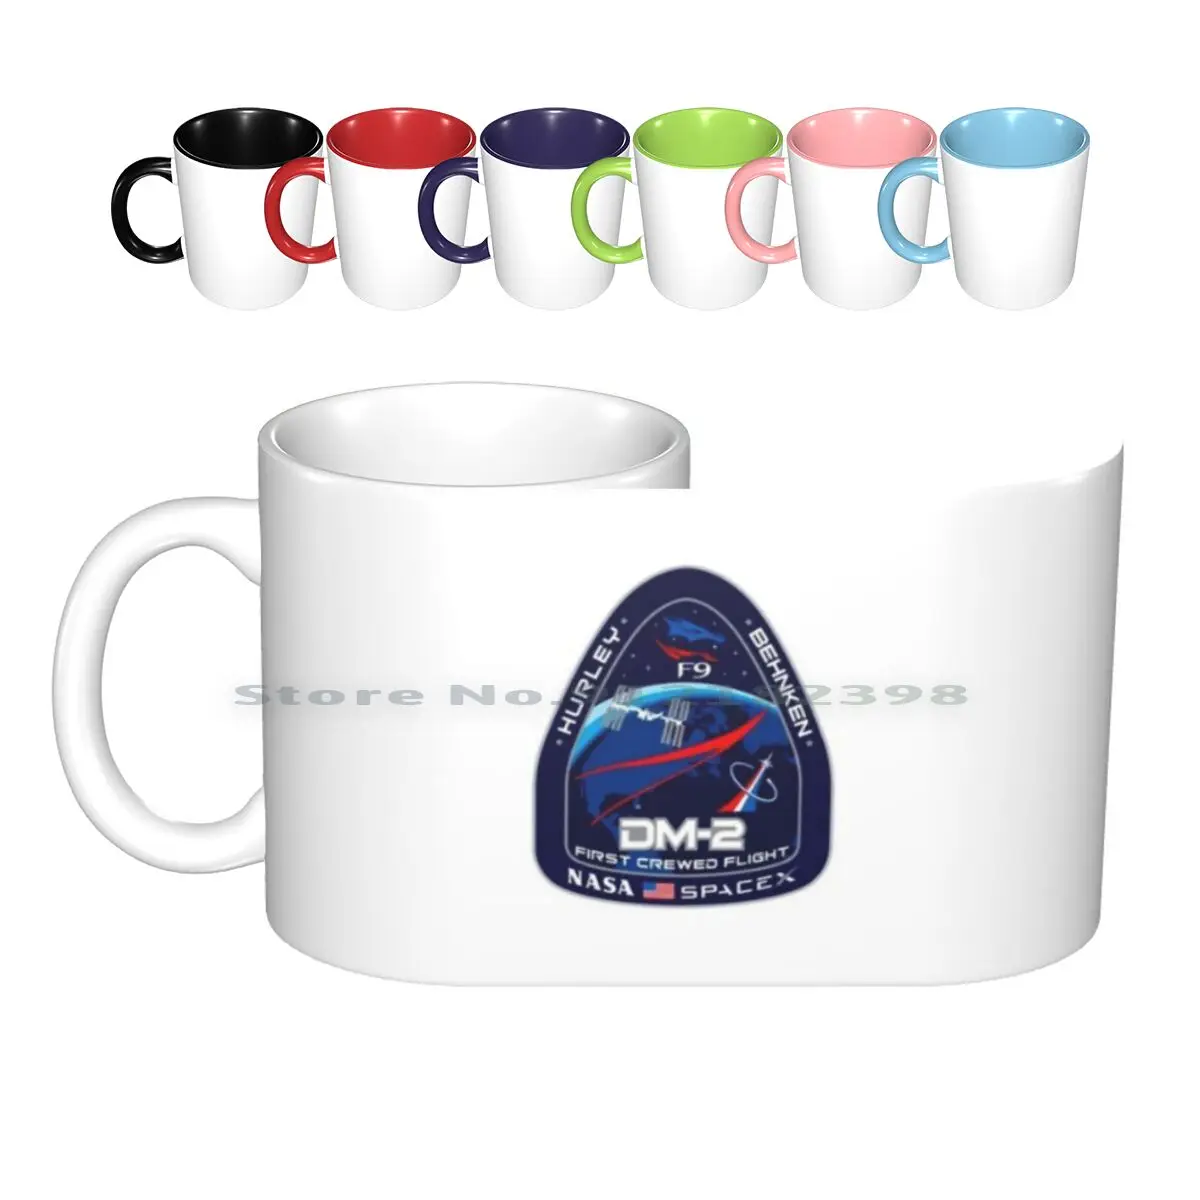 

Керамические Кружки Space X Crew Dragon, кофейные чашки, Кружка для молока и чая, кружка Dm 2 с логотипом Dragon Space X Launch First CREE Flight Space X